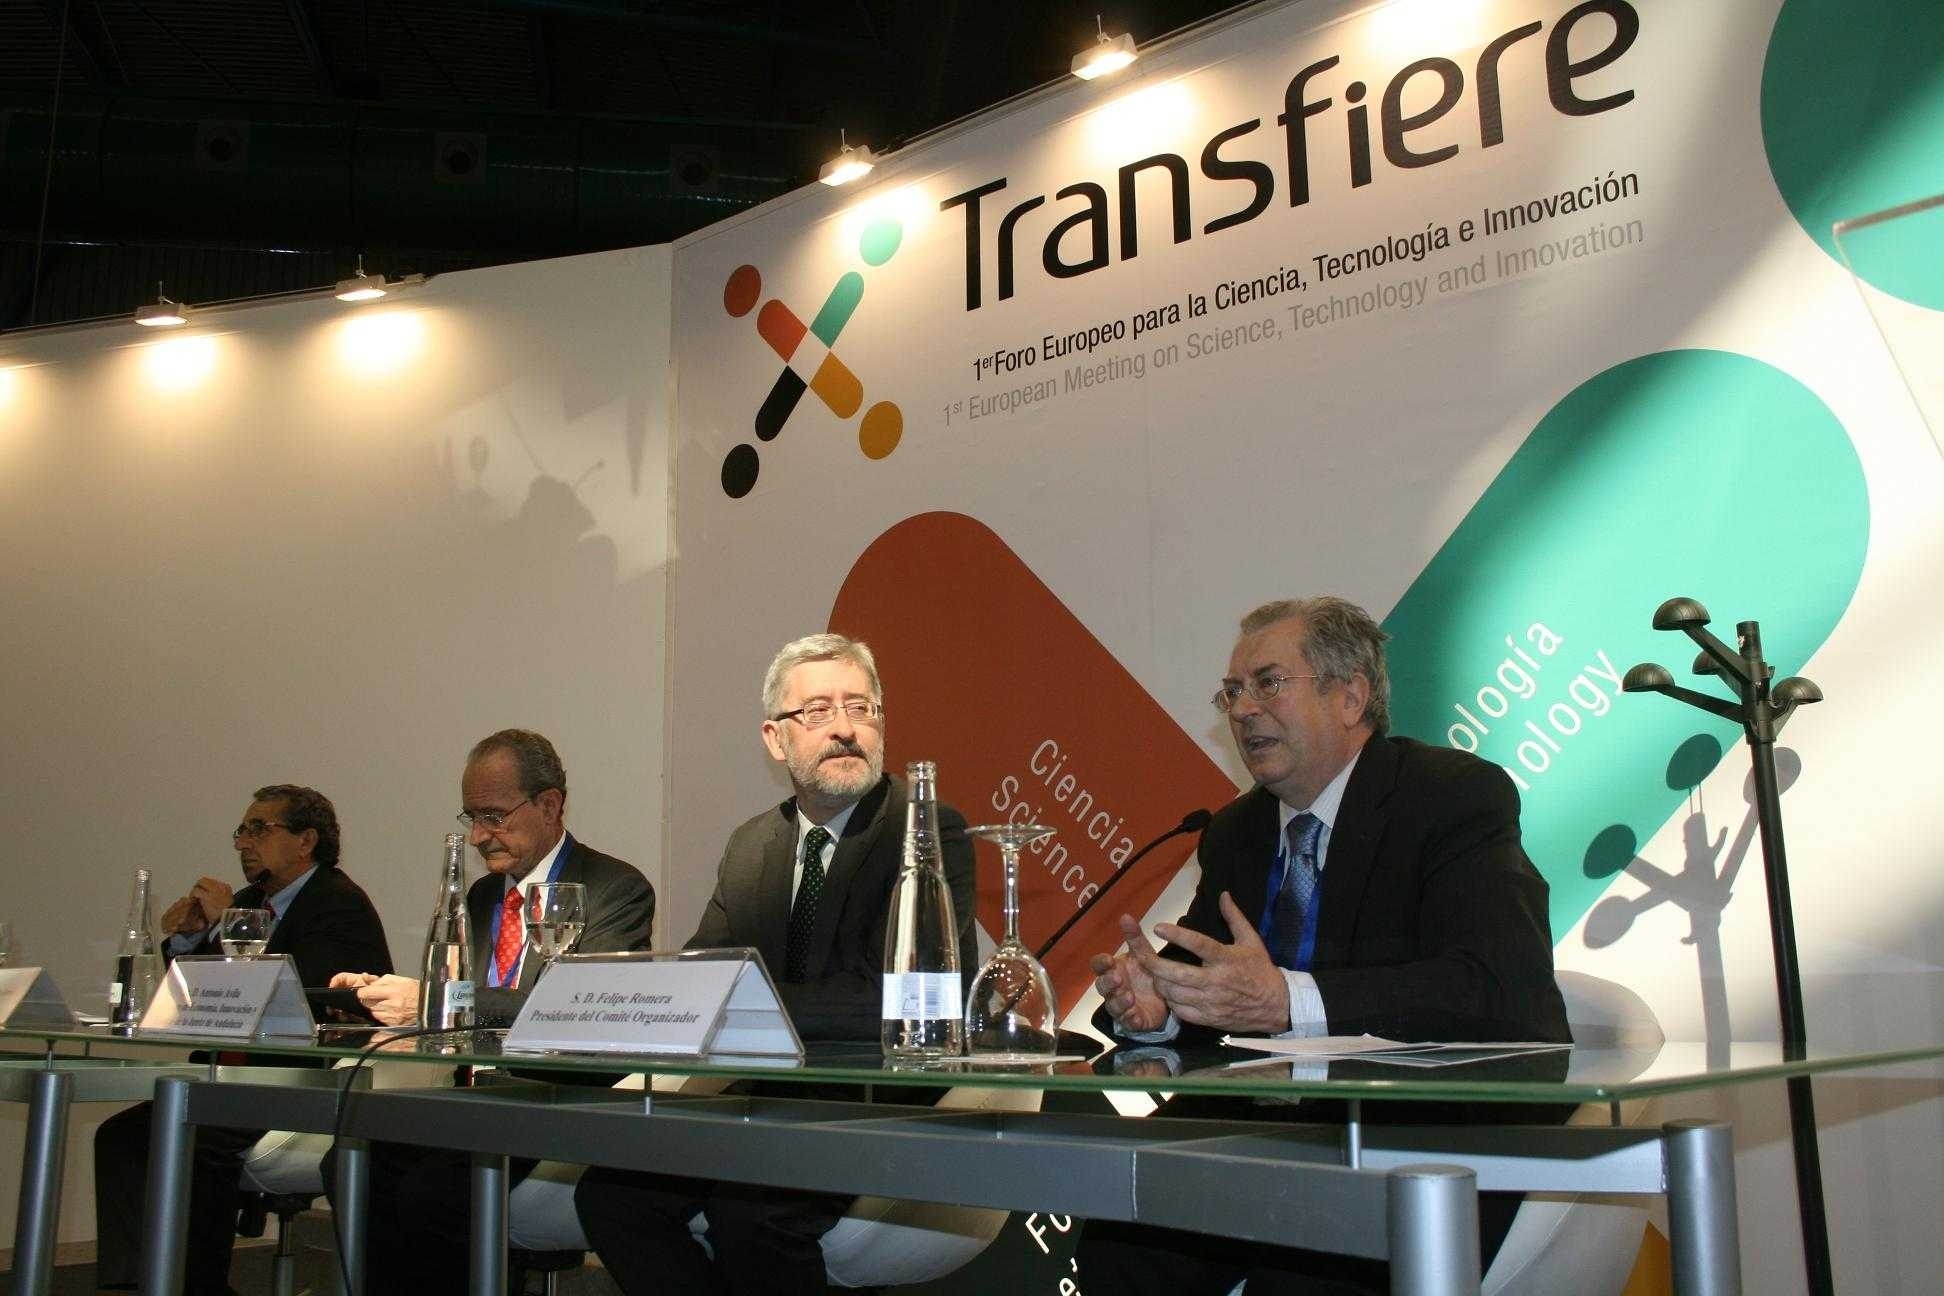 Transfiere concluye su primera edición con más de 2.500 encuentros y 1.200 participantes